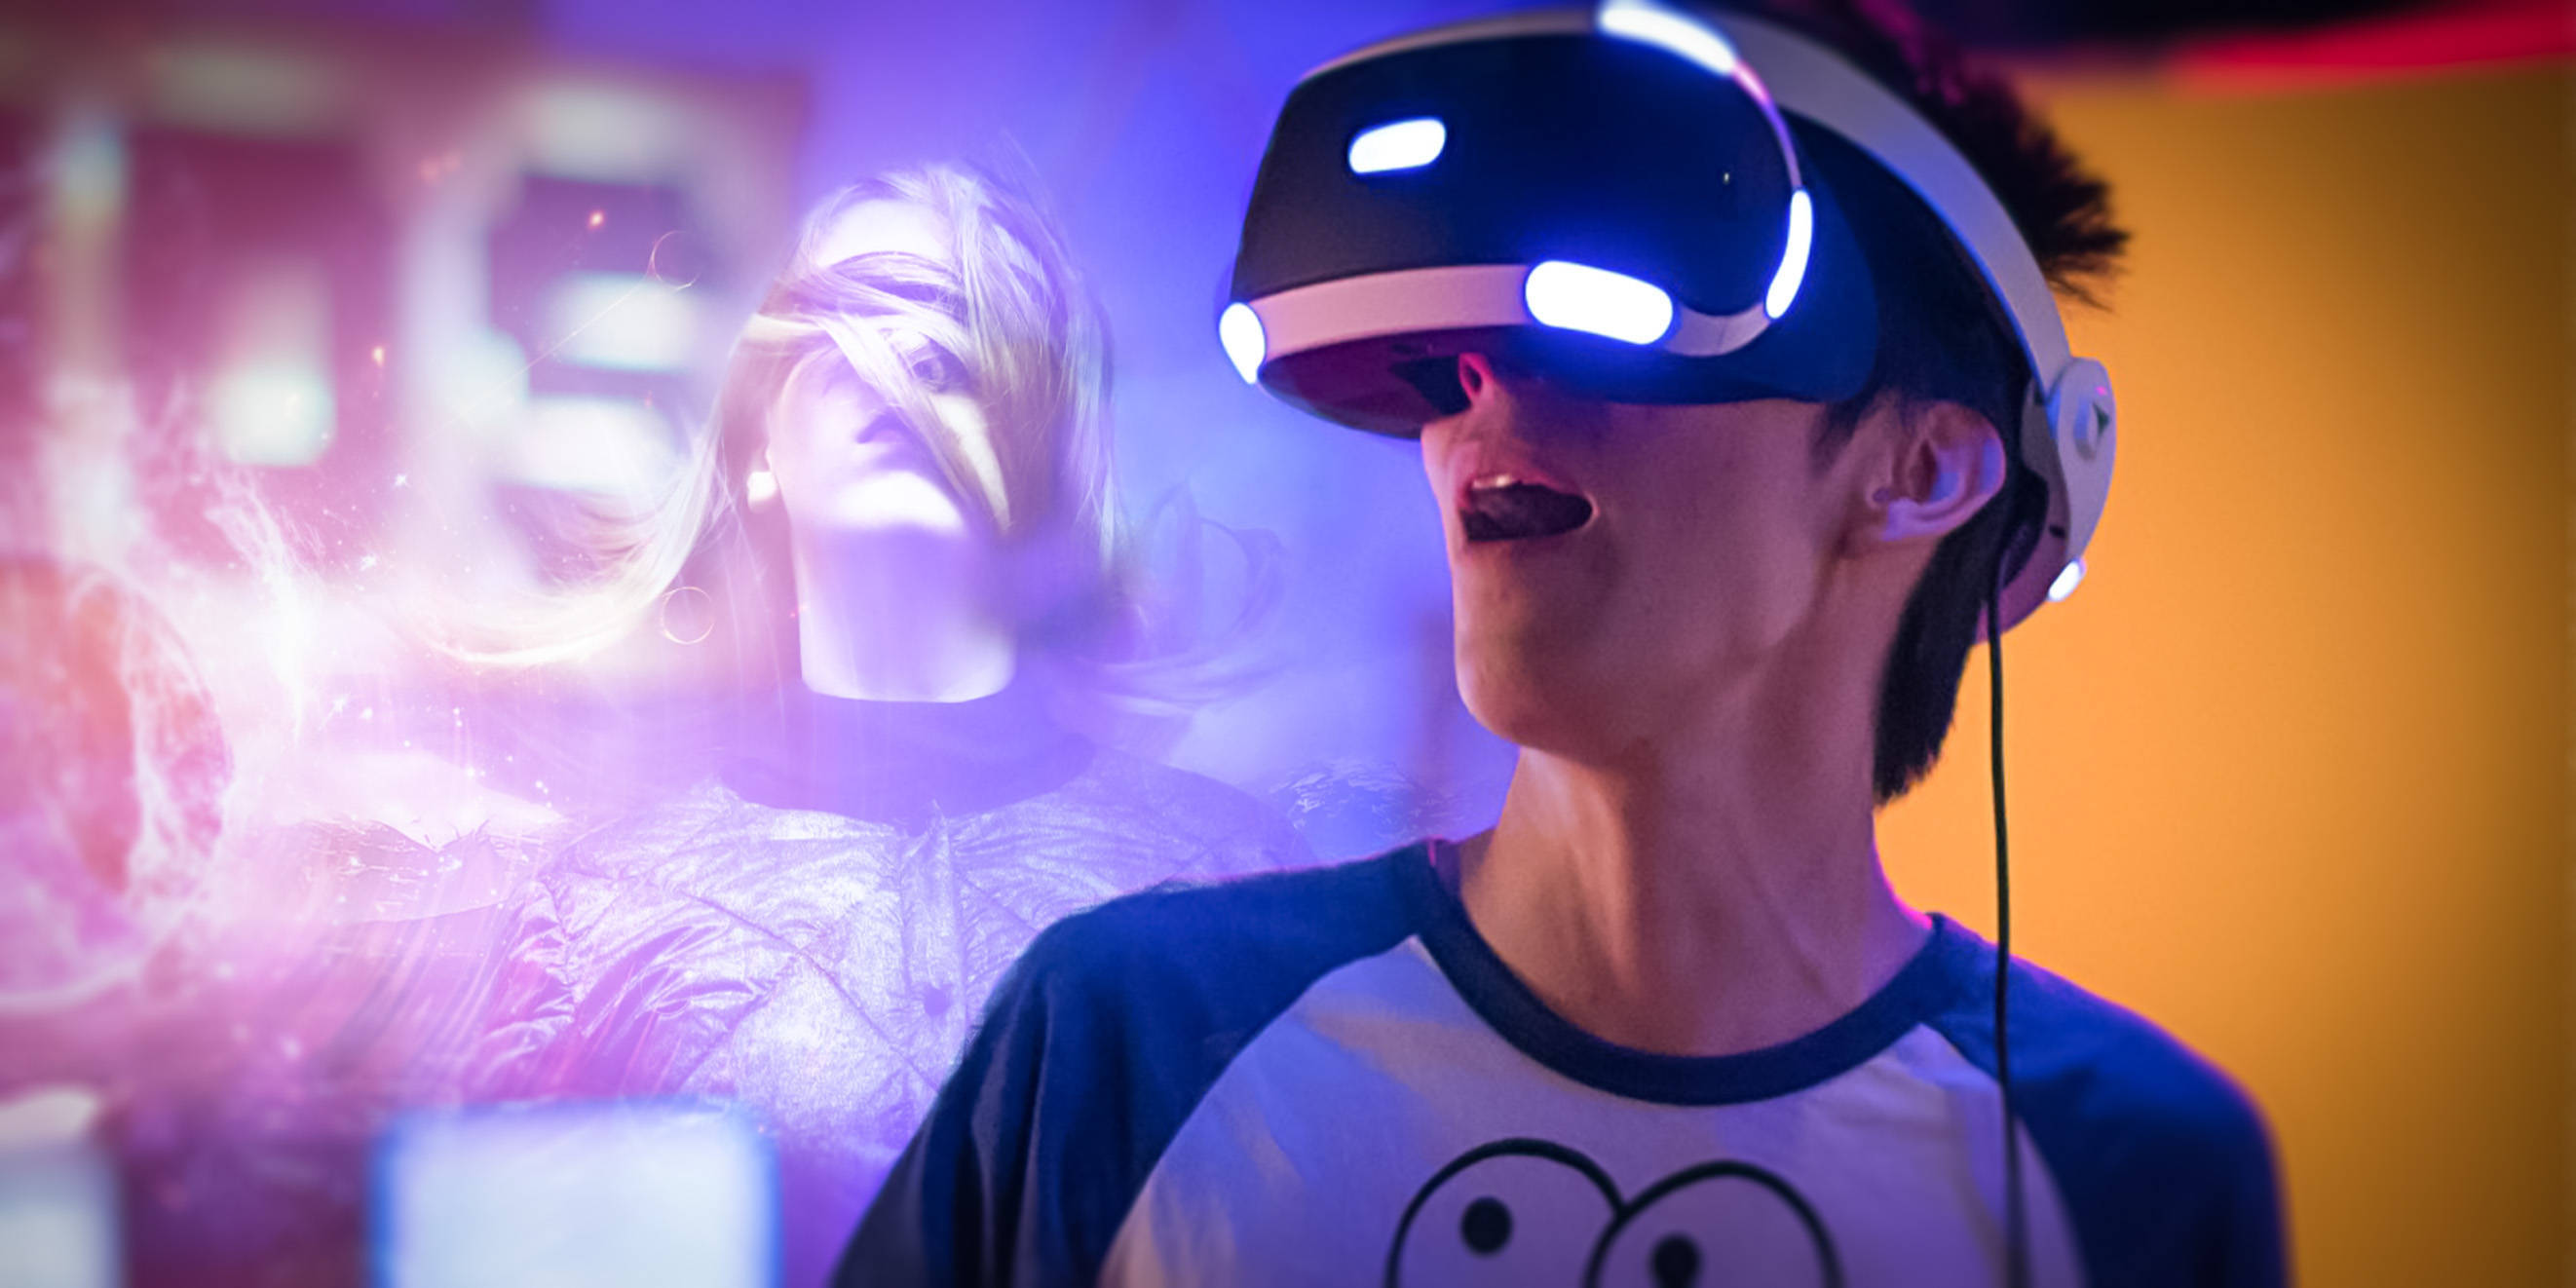 图片展示两人戴着虚拟现实头盔，似乎正在体验沉浸式游戏。他们表情专注，背景色彩斑斓，充满科技感。